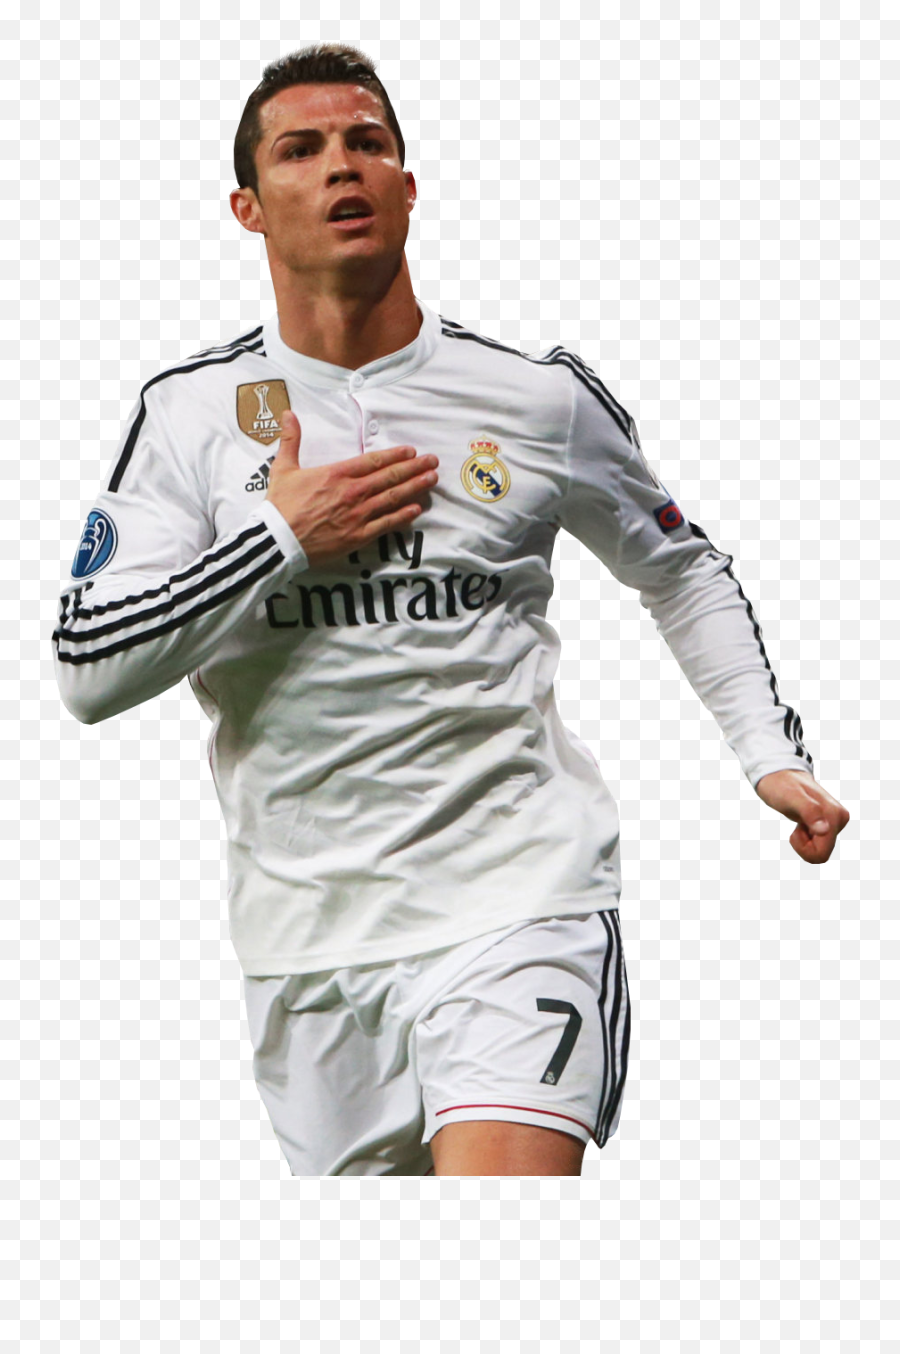 Download Cristiano Ronaldo Foot - Cristiano Ronaldo Png Cristiano Ronaldo 14 15,Cr7 Png